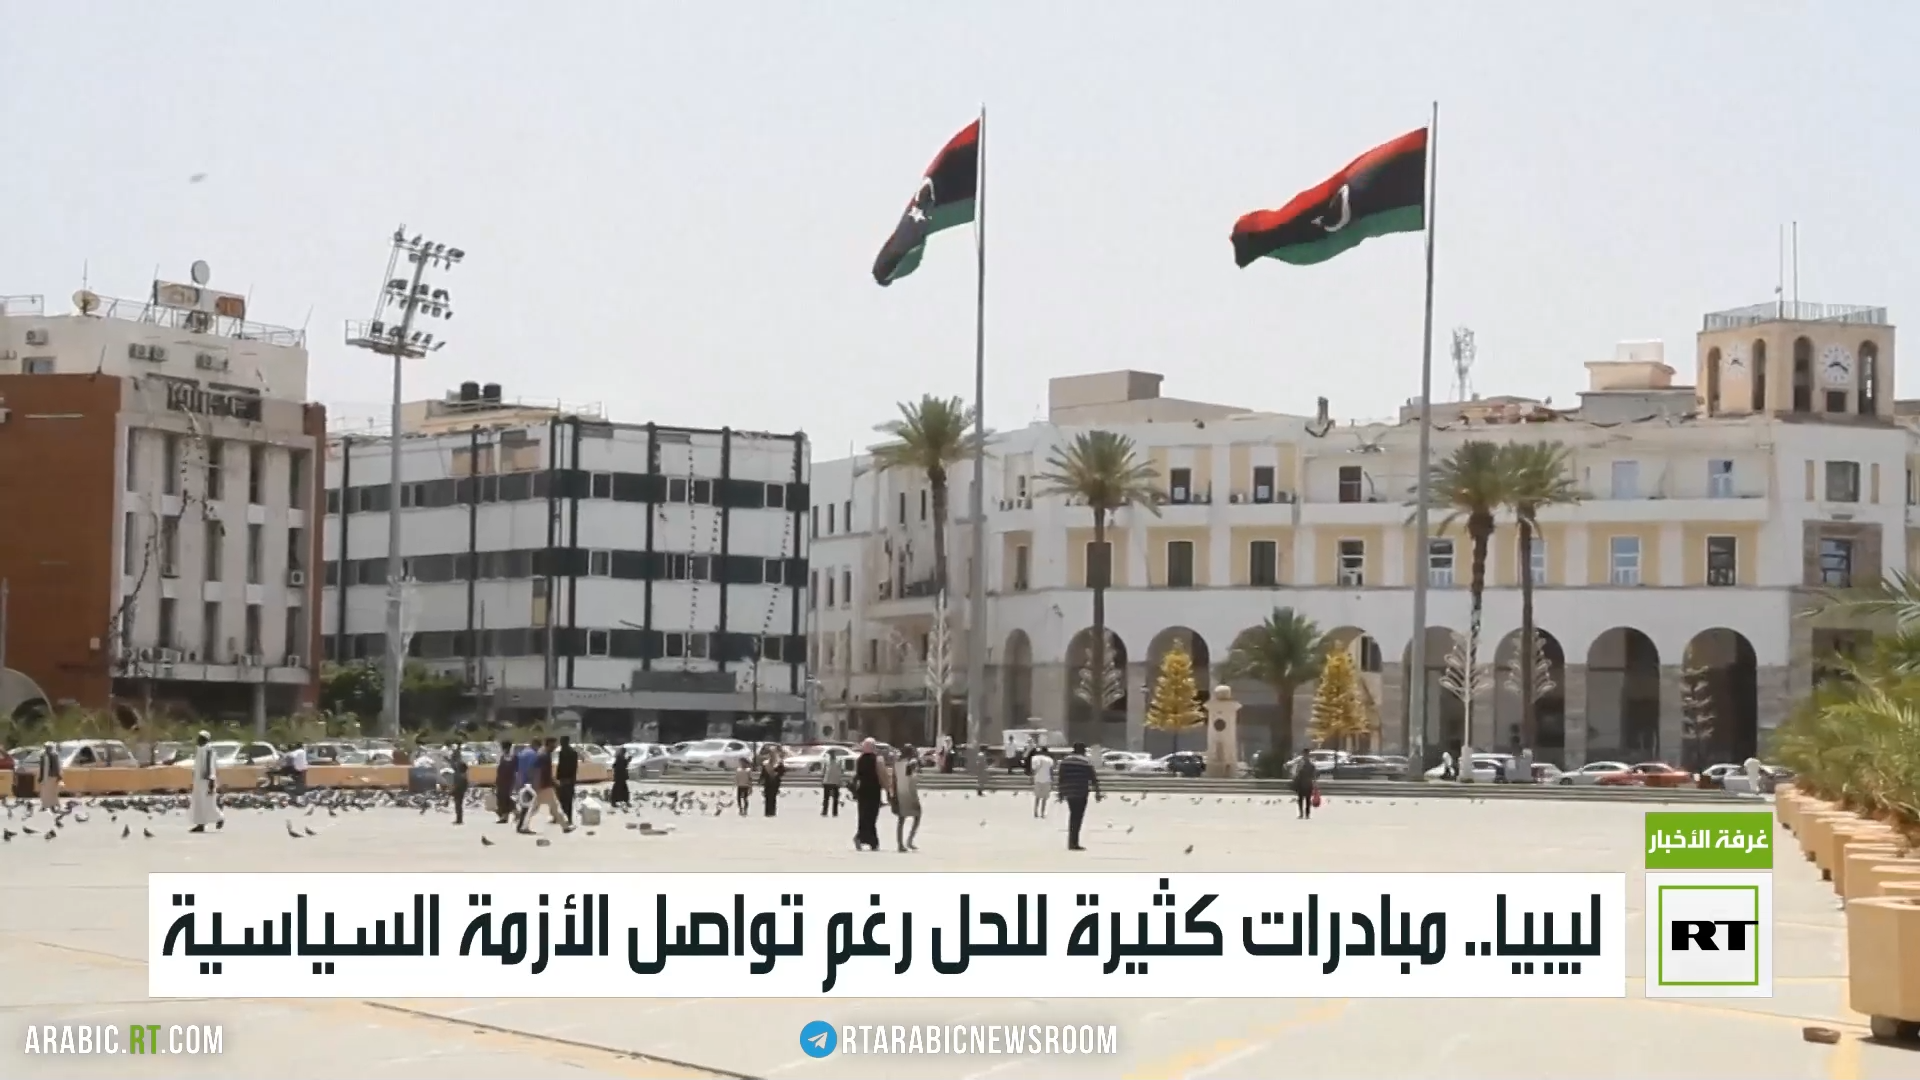 ليبيا.. مبادرات كثيرة للحل رغم تواصل الأزمة السياسية